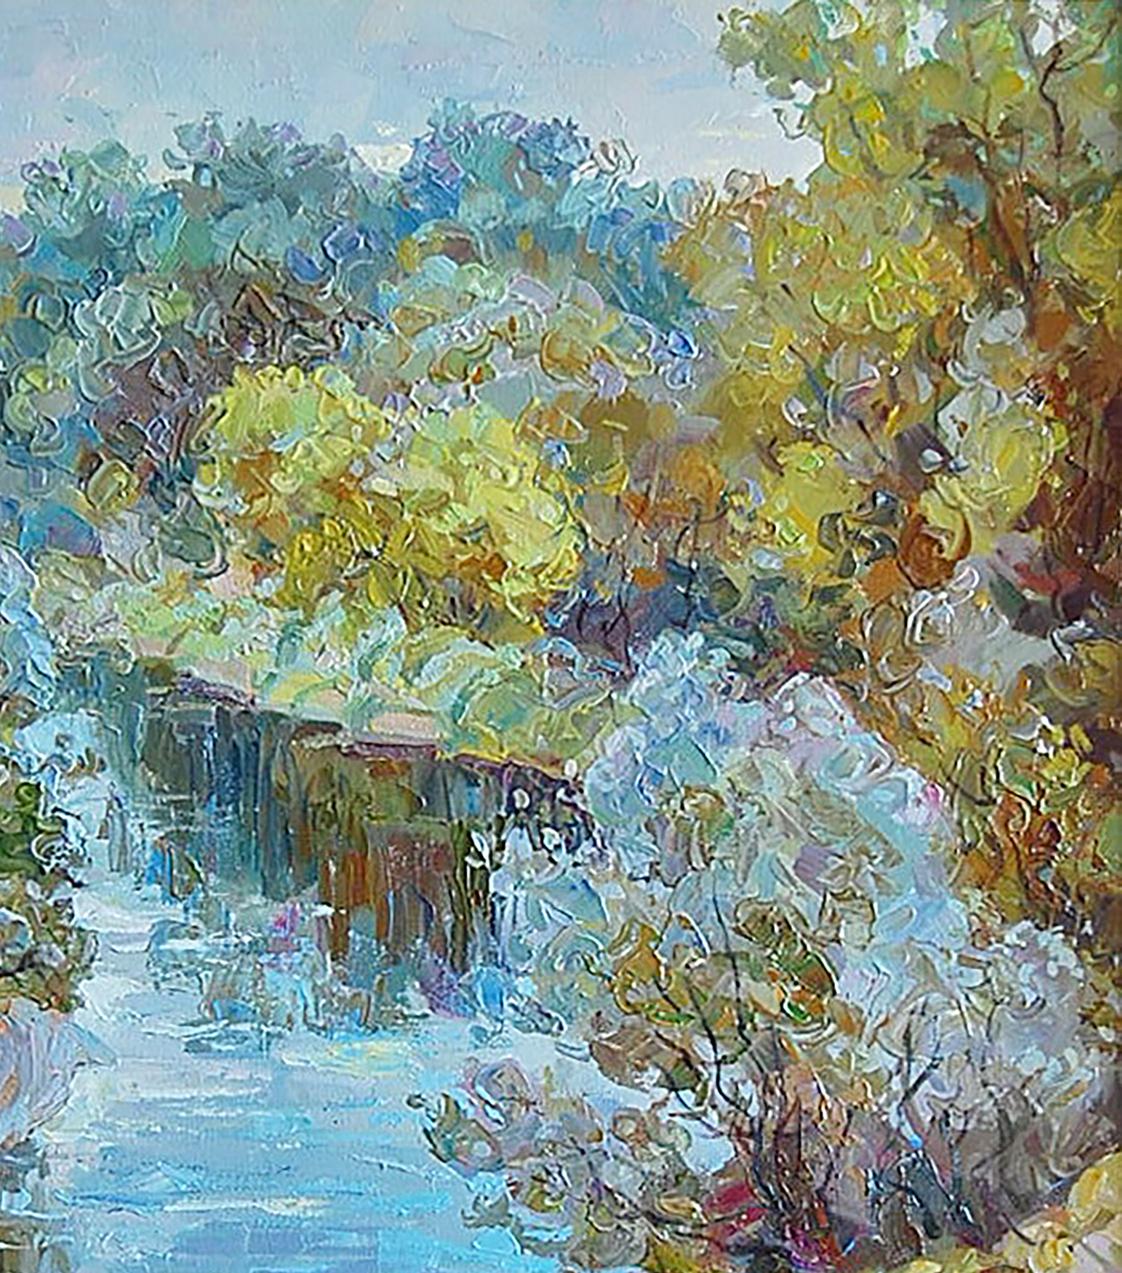 Oil painting Cool morning on the river Dmitry Artim